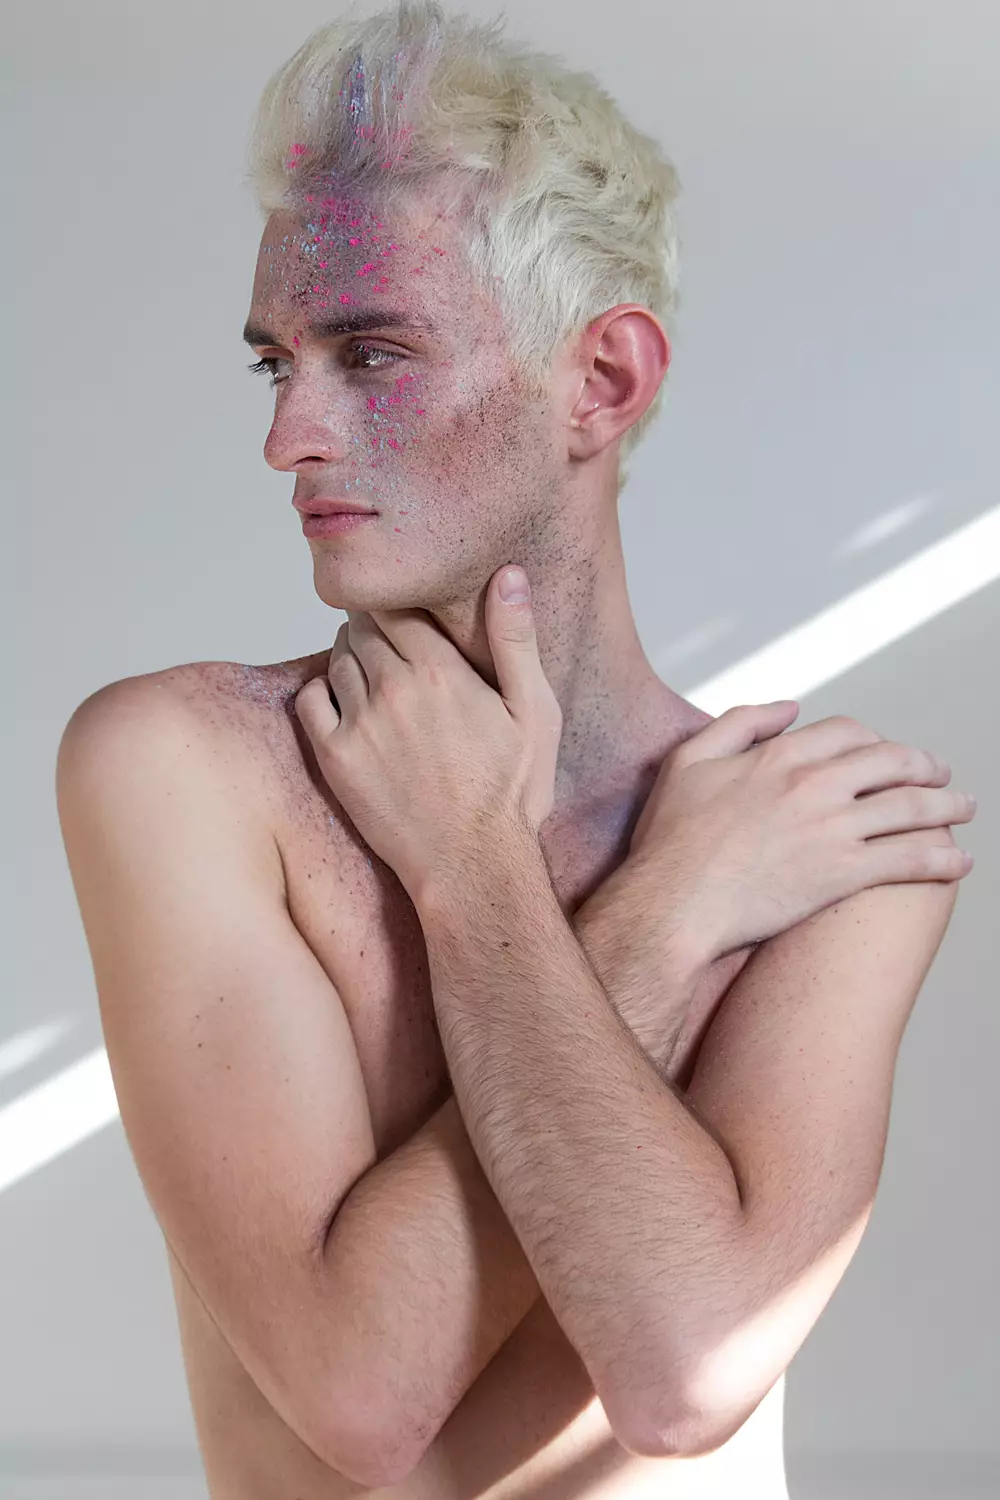 Ritratt tat-test b'wiċċ ġdid Adrian Nemi, miġbud mill-Fotografu Ċilen René de la Cruz. Make up & Hair: Tobias Sevilla